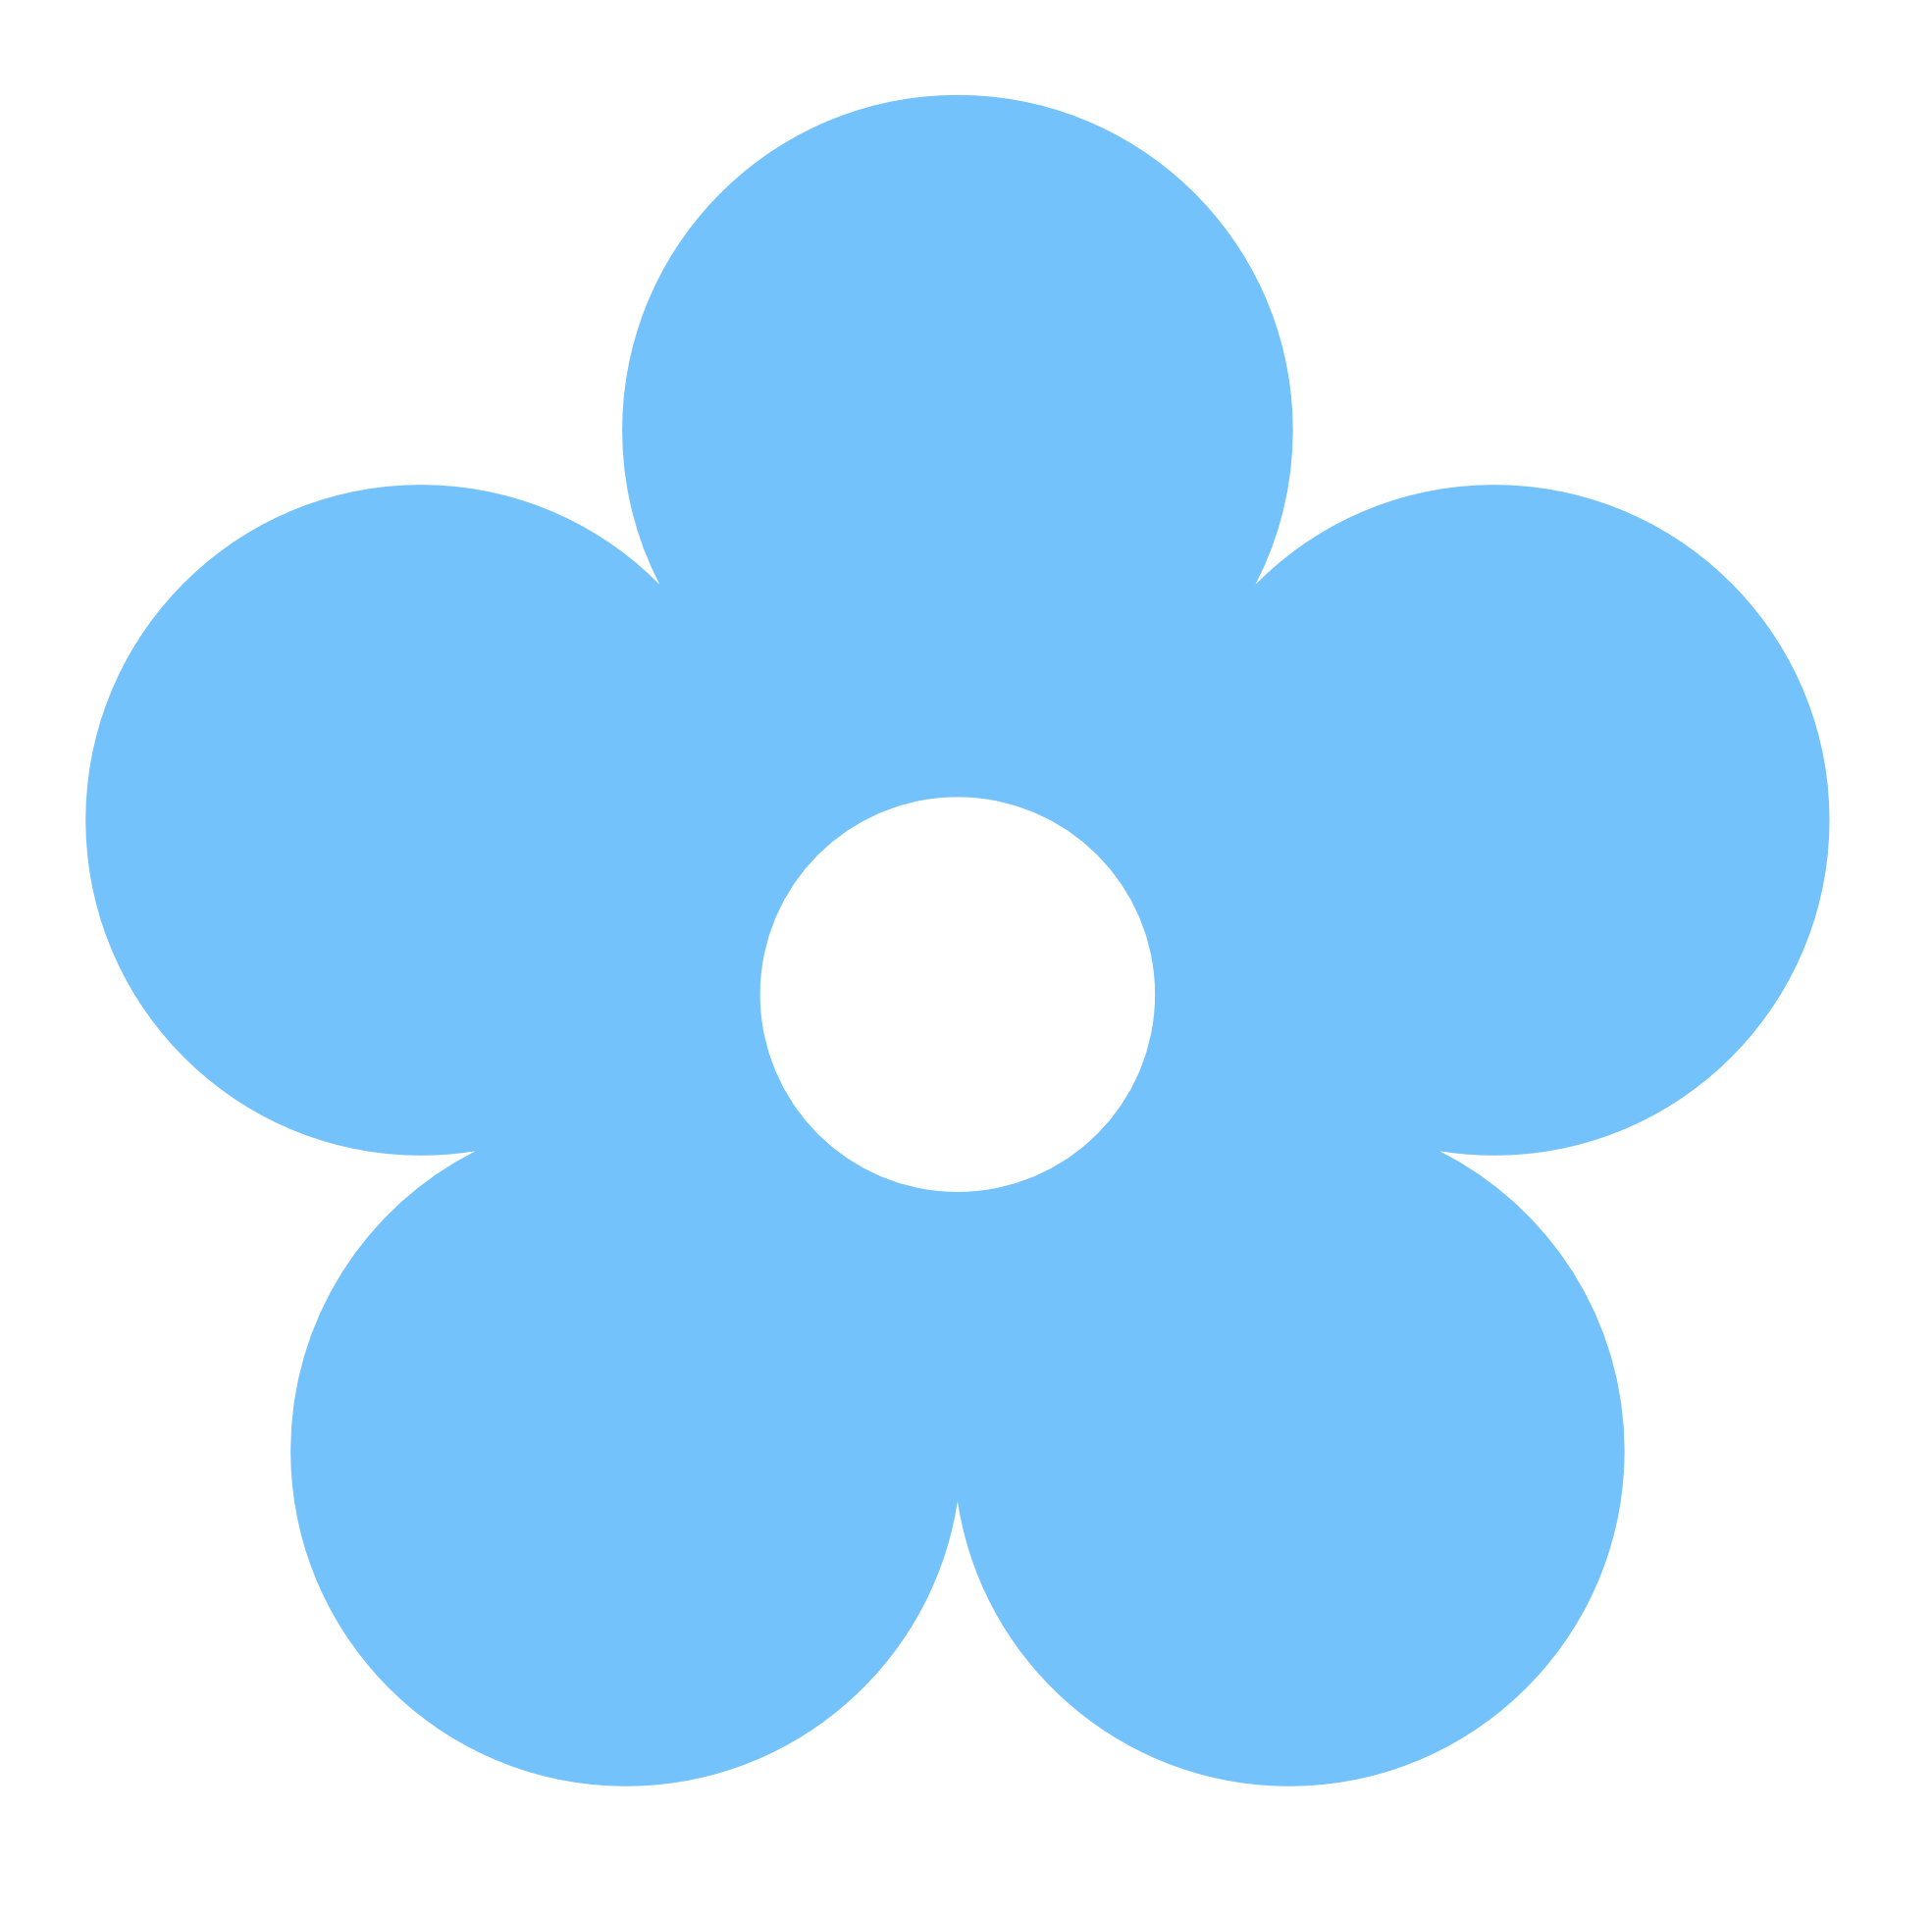 Blue Flower Clip Art At Clker